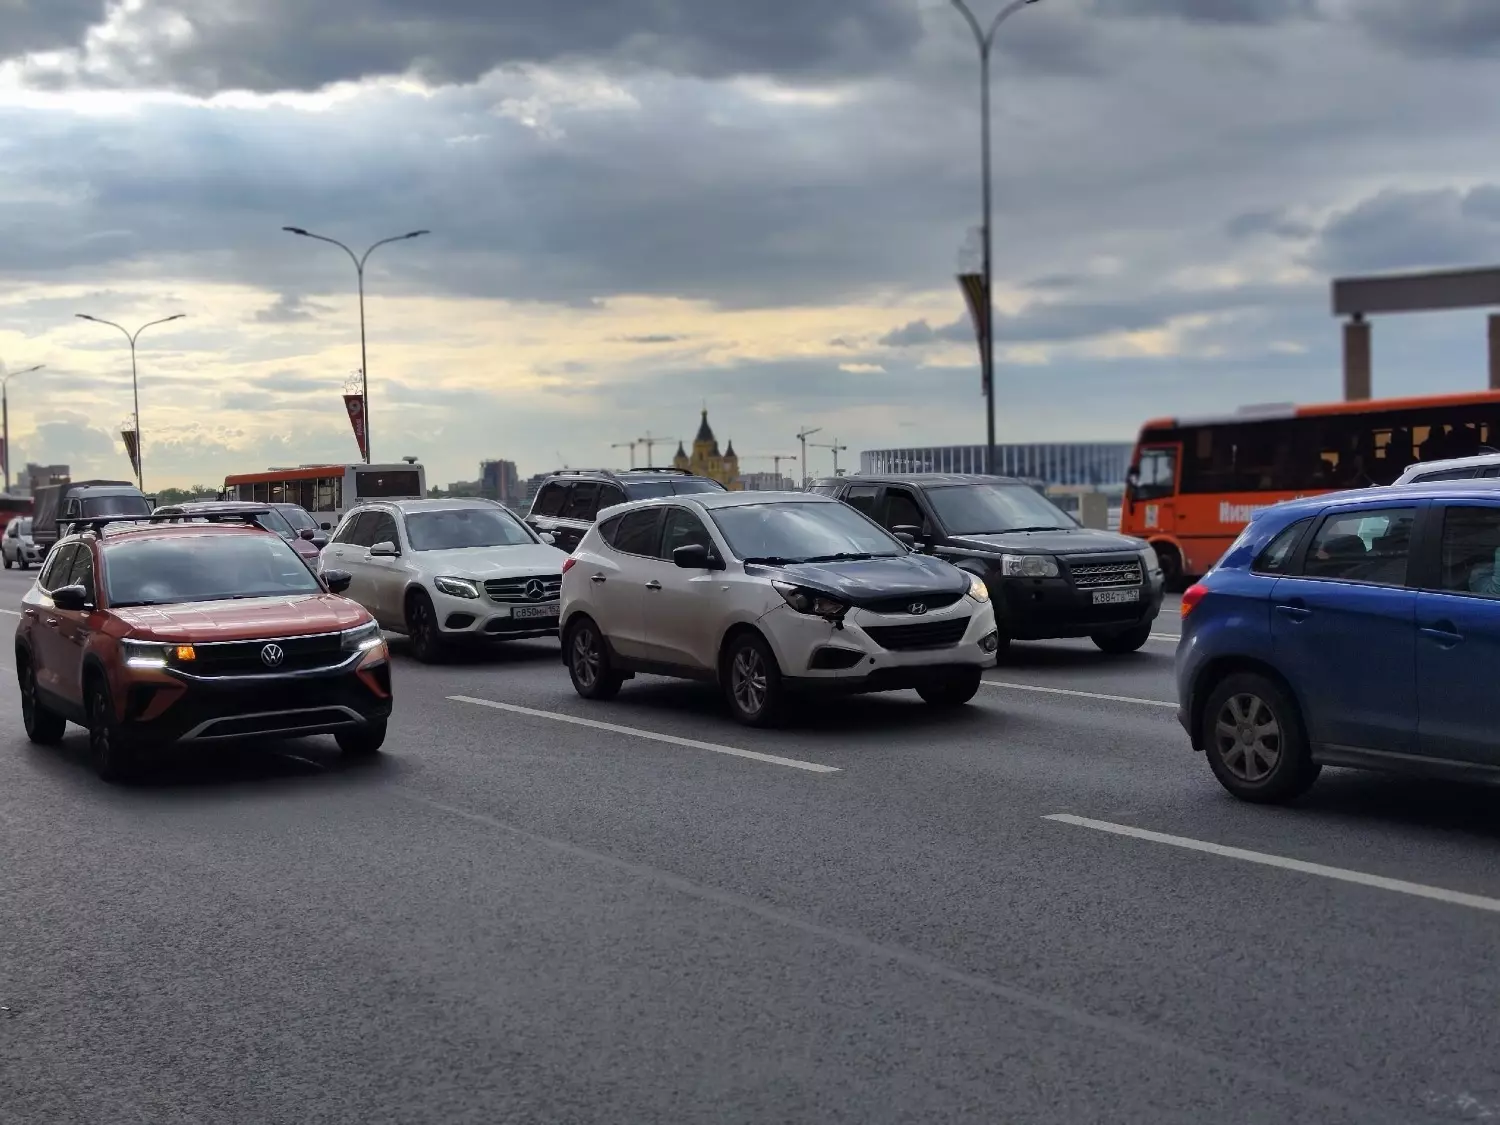 Цены на такси в Нижнем Новгороде порой дороже, чем в Москве